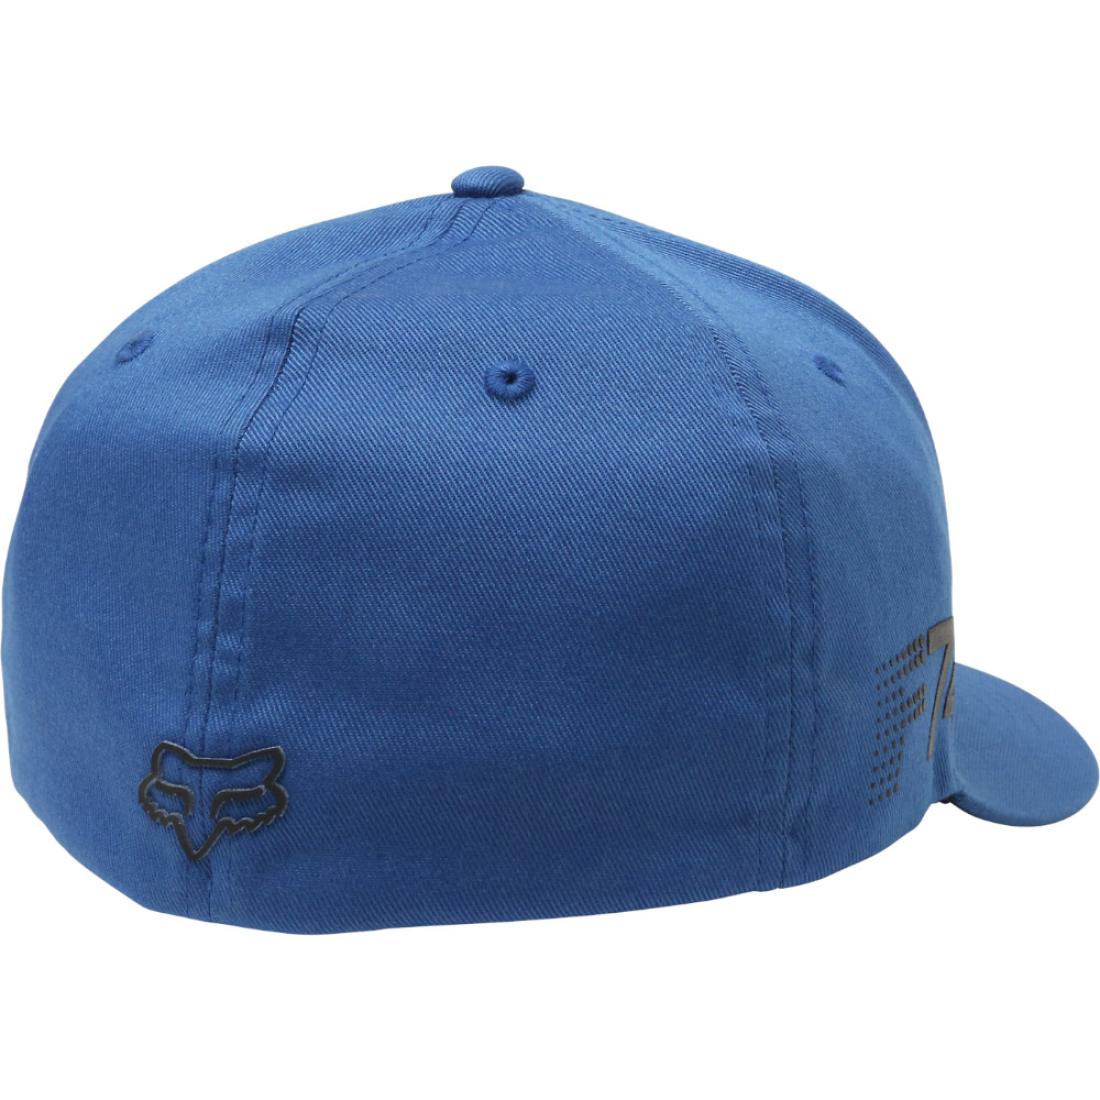 Draftr Flexfit Hat Dusty Blue